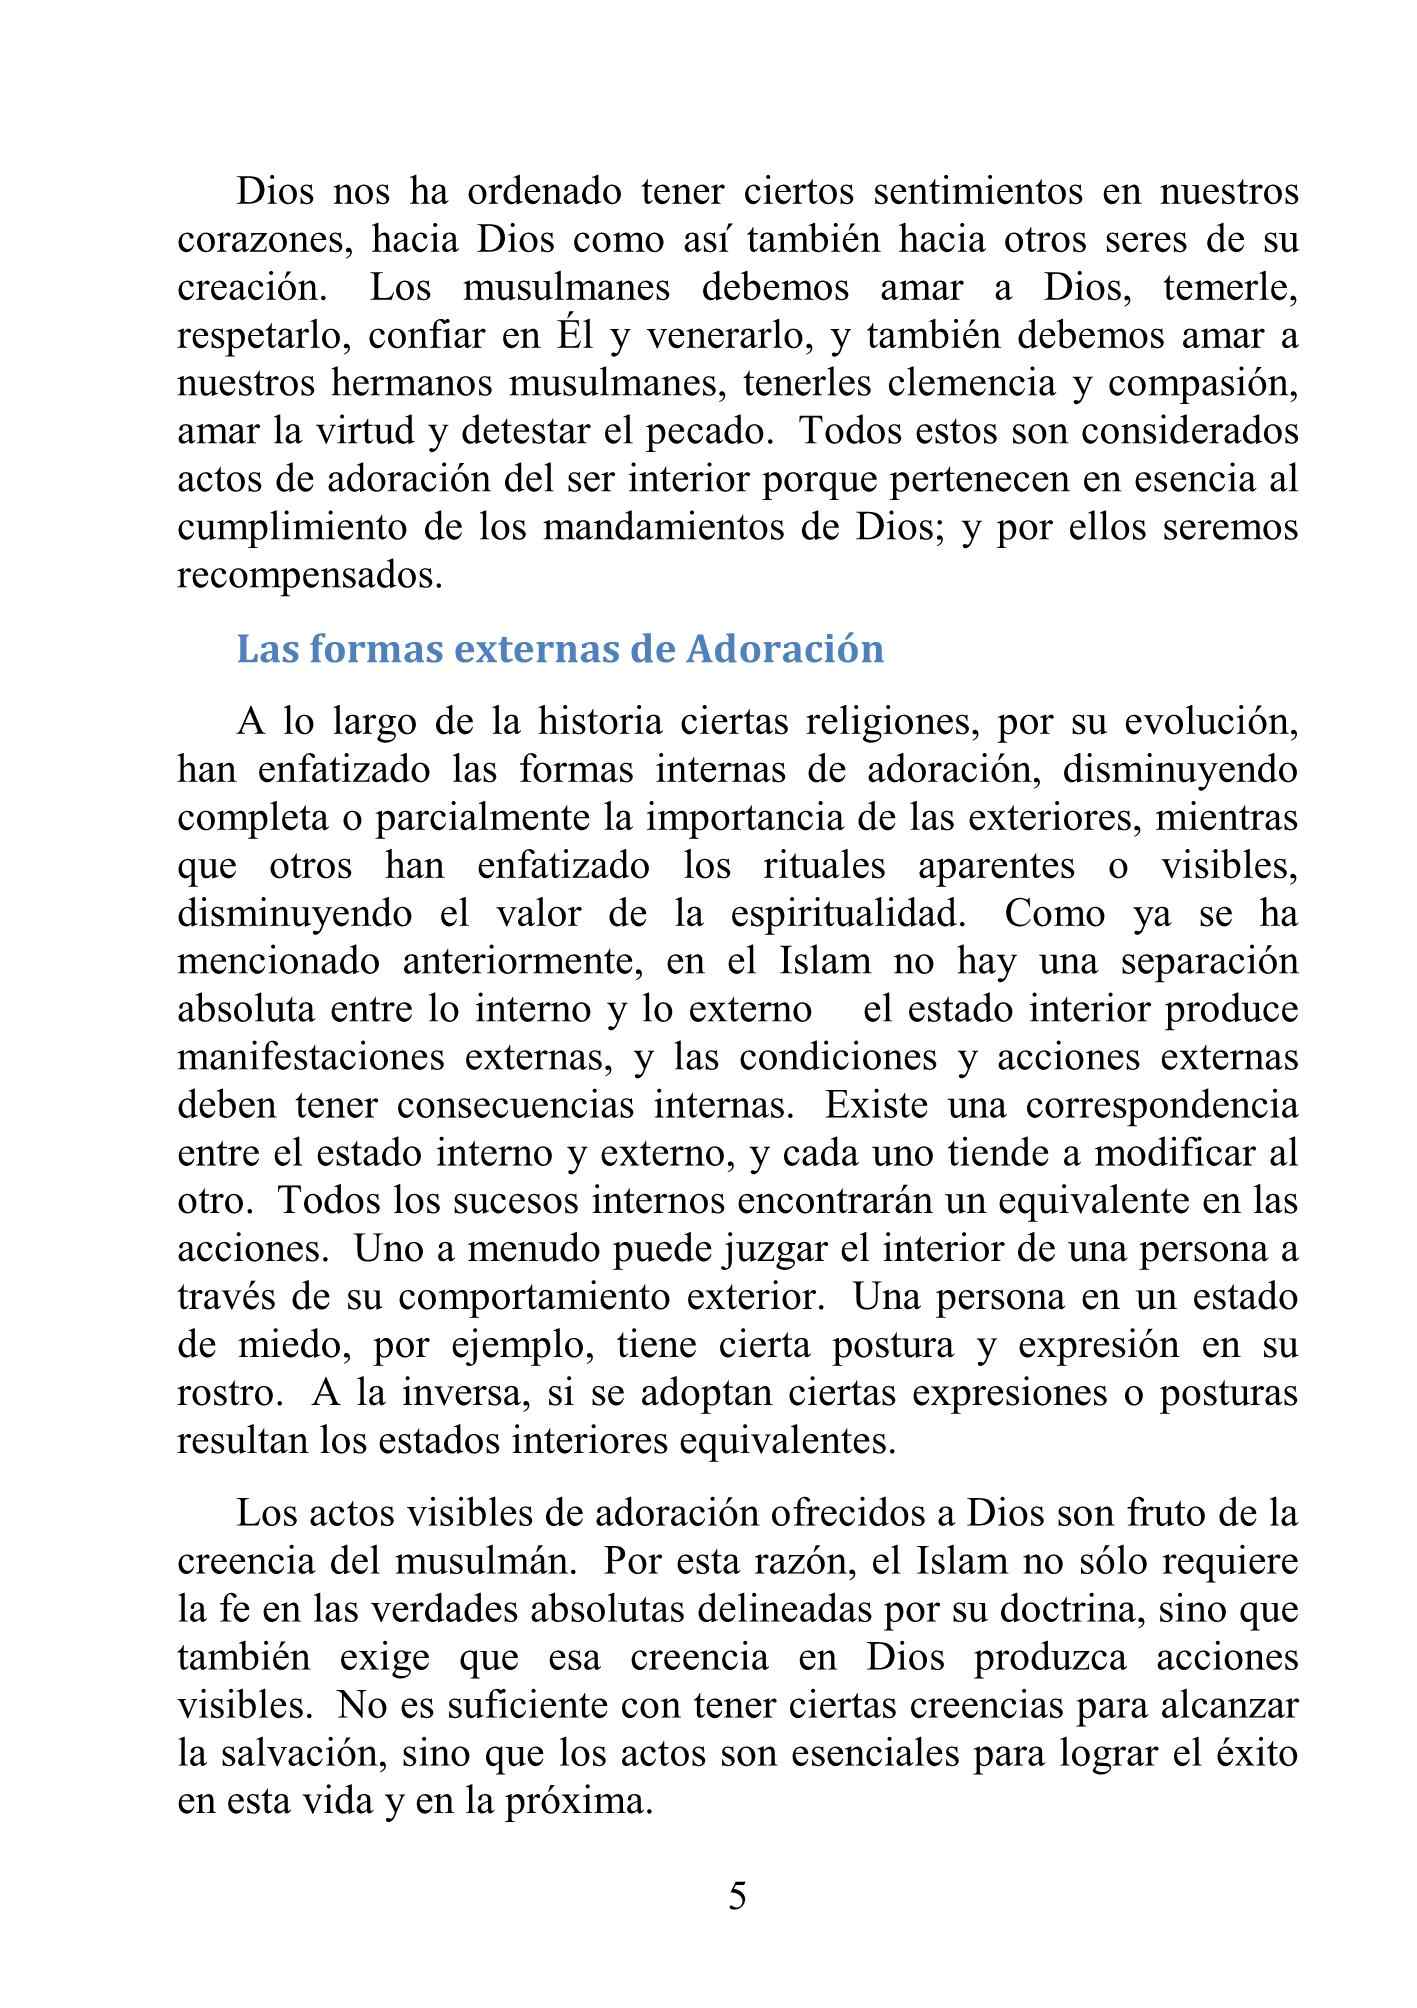 إسباني - العبادة في الإسلام - La Adoración en el Islam.pdf, 11-Sayfa 